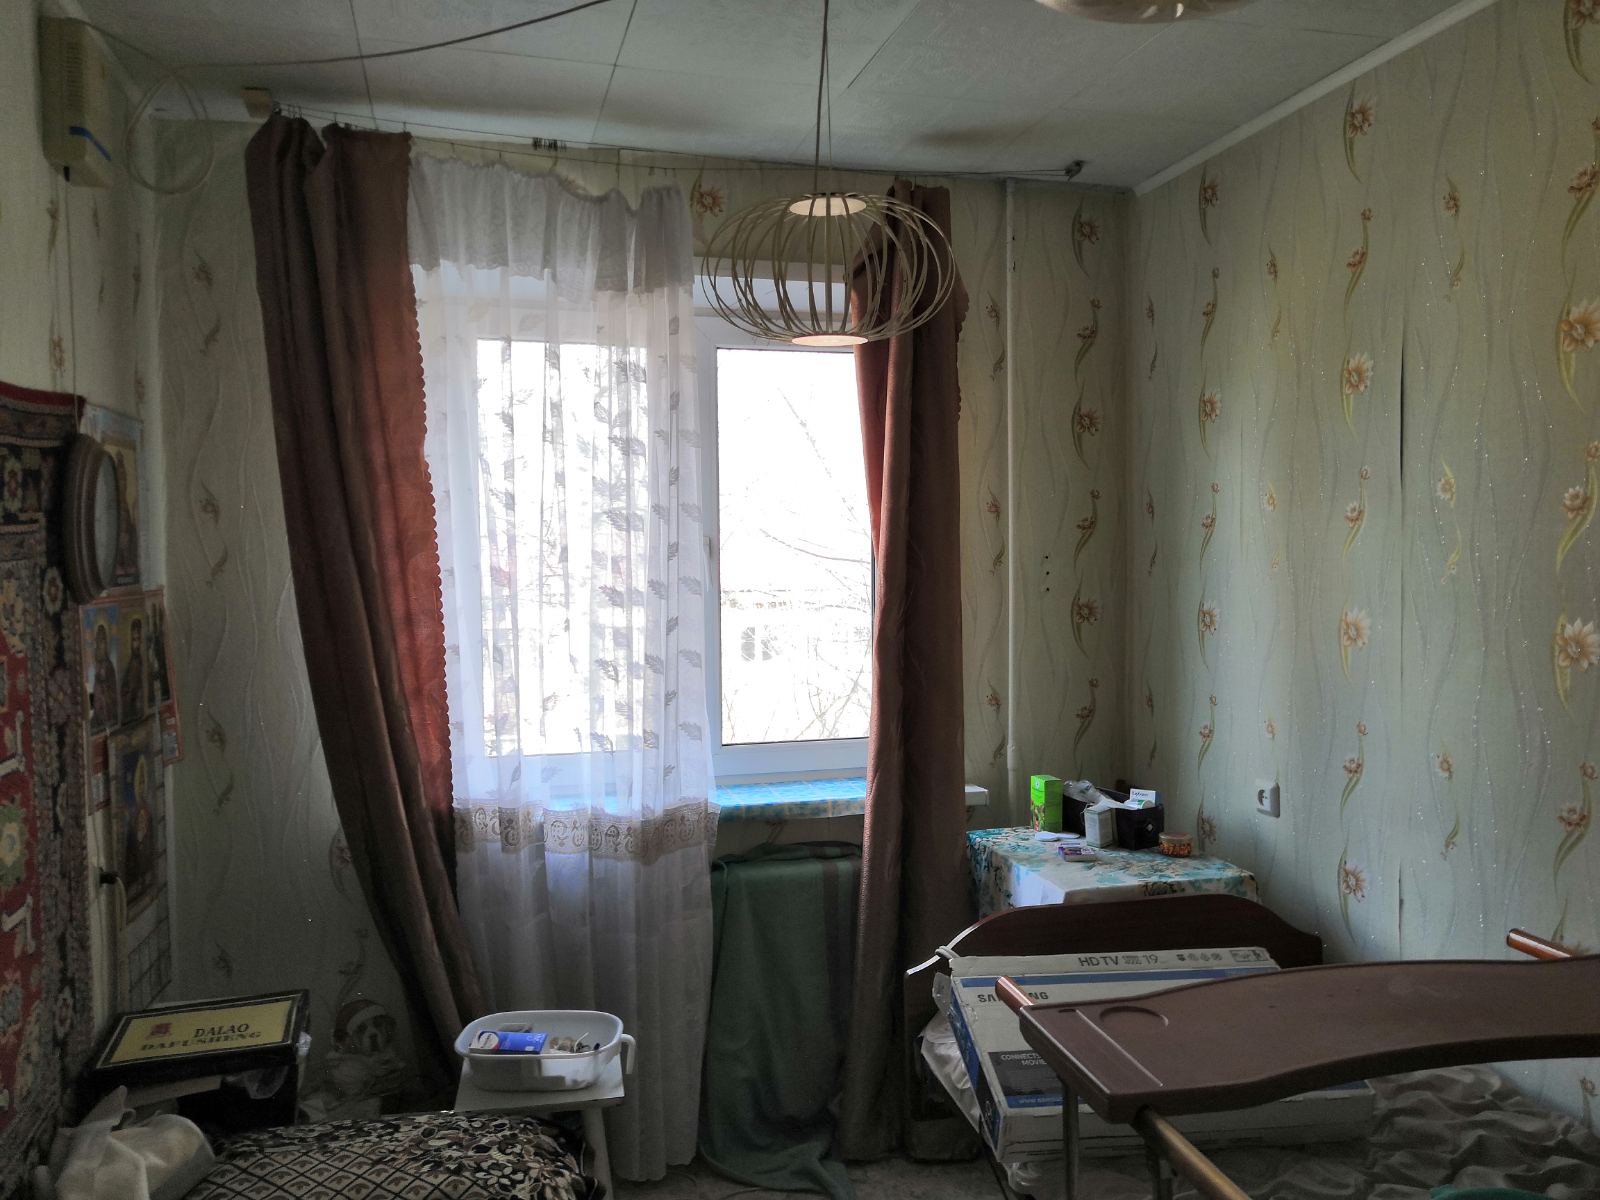 Балашов-3 дом 23. Купить 1 комнатную квартиру в балашове